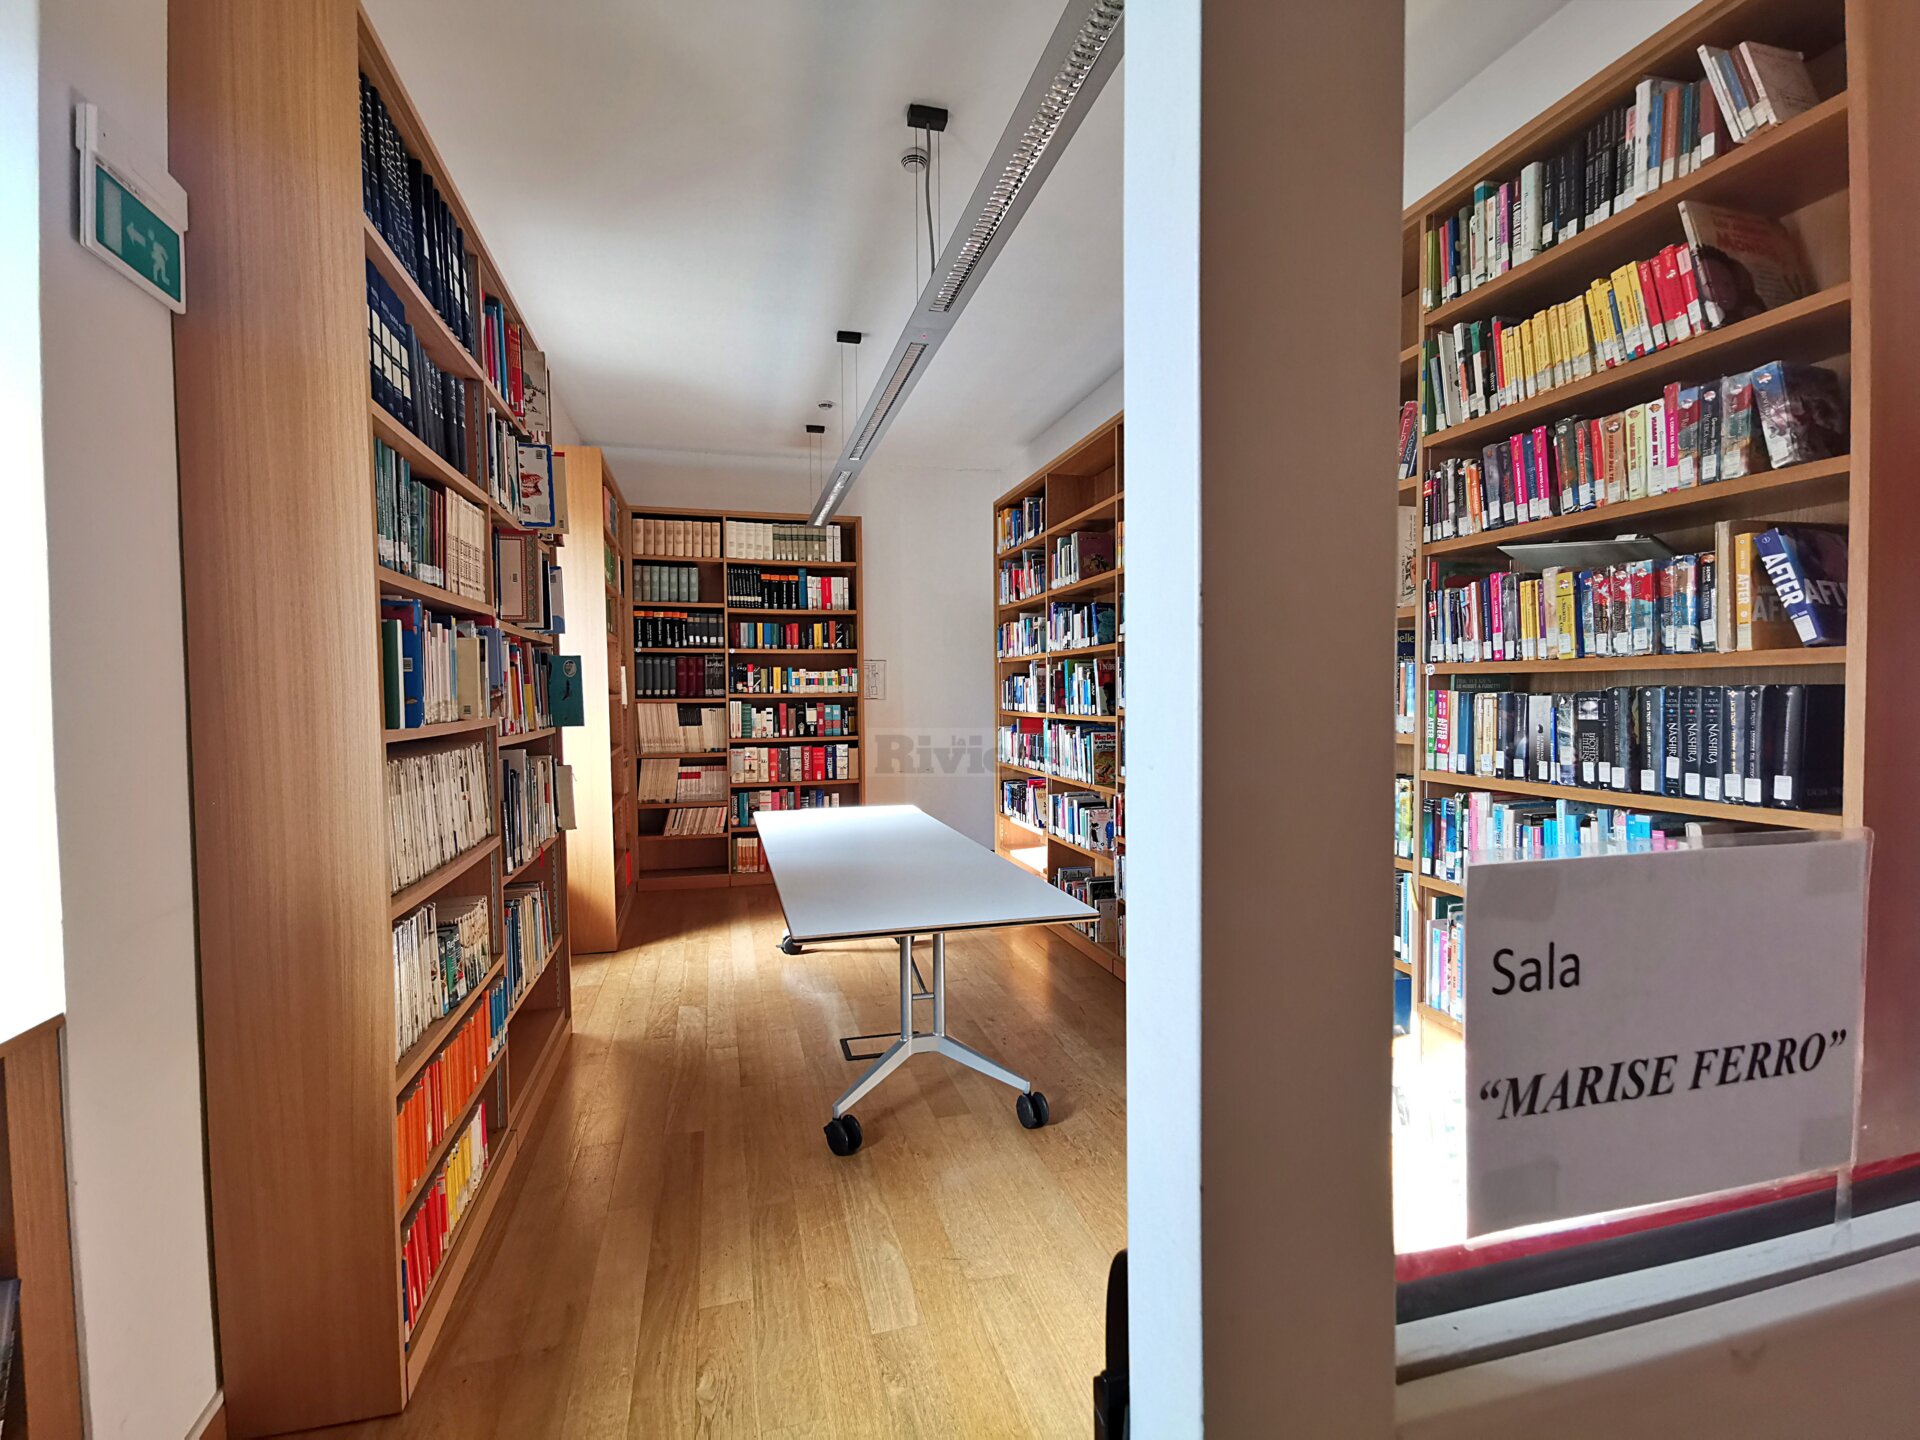 Marise Ferro intitolazione sala biblioteca civica di Ventimiglia_05